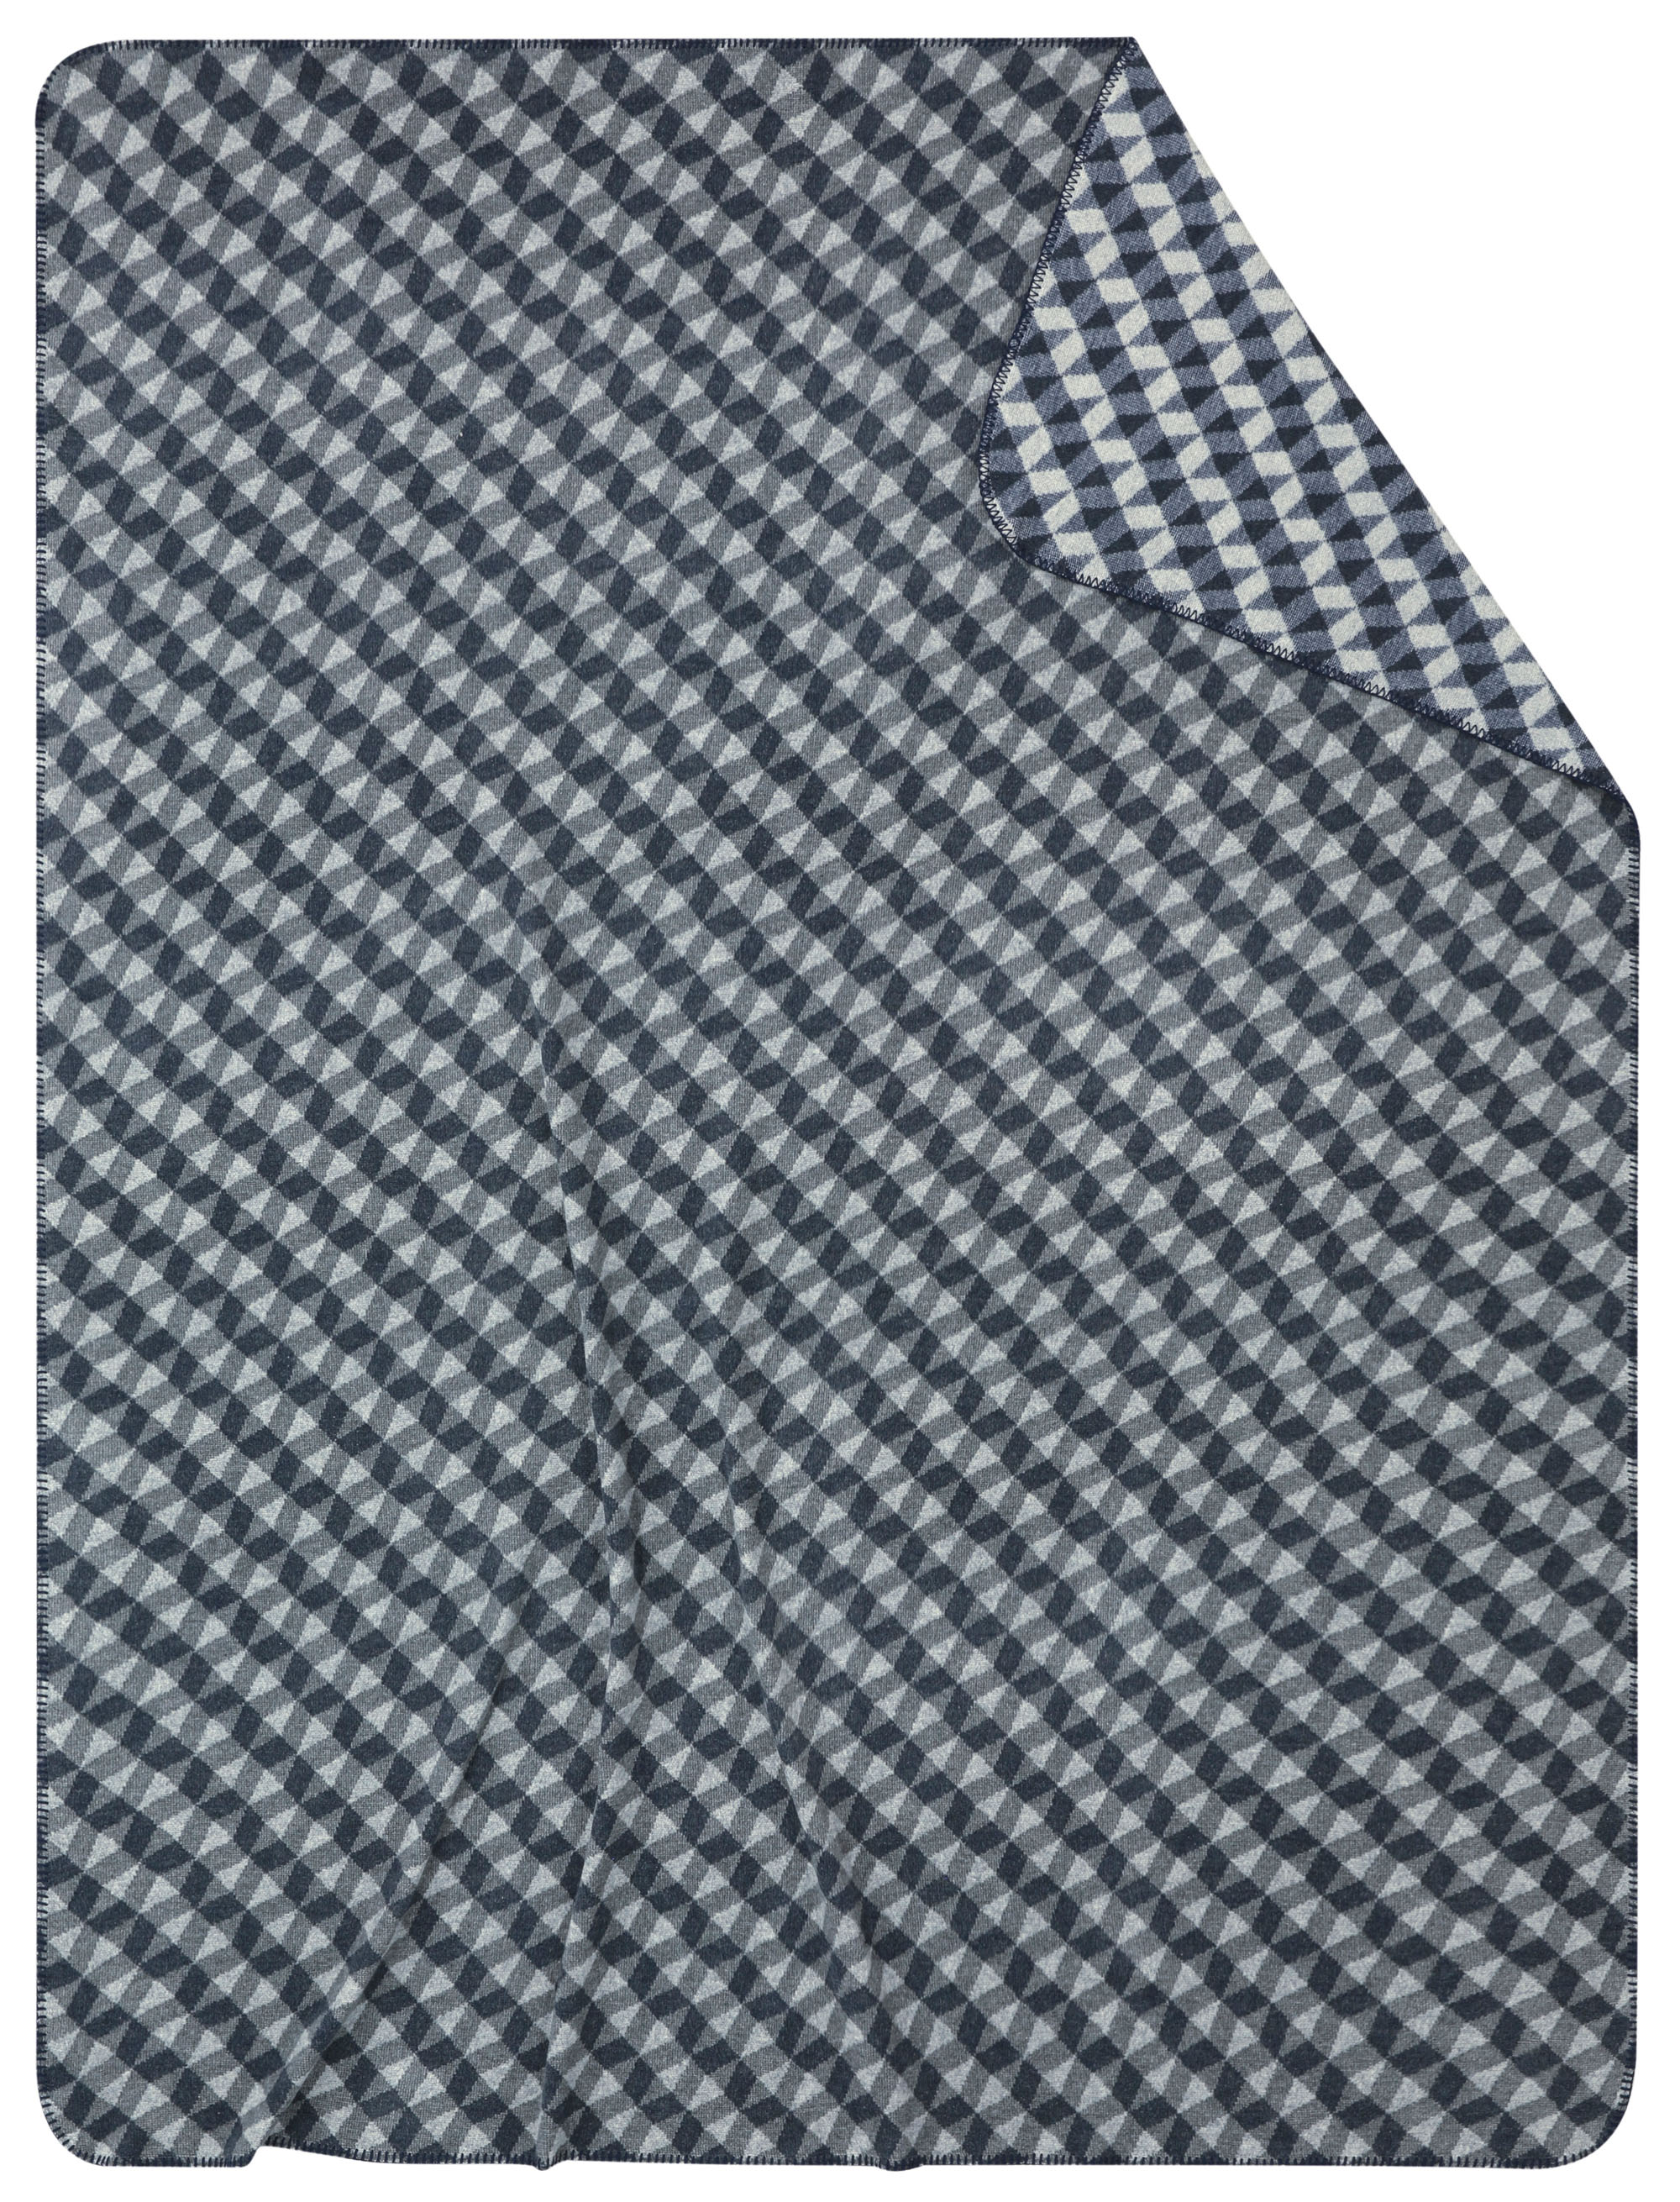 Nachhaltige Kuscheldecke "Reflection blue" aus Recycling-Garn mit grafischem Muster in blau